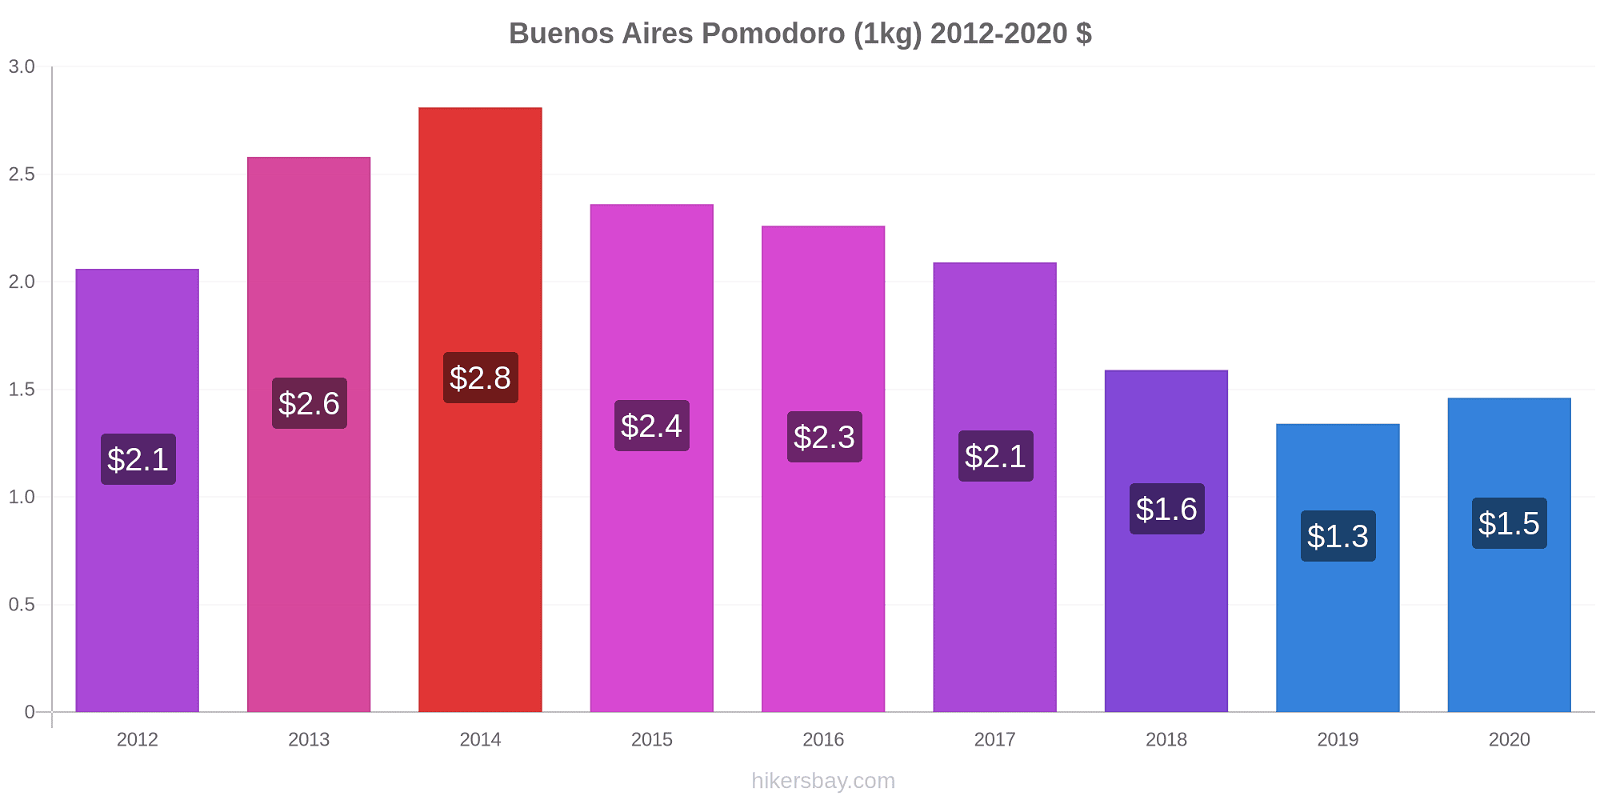 Buenos Aires variazioni di prezzo Pomodoro (1kg) hikersbay.com